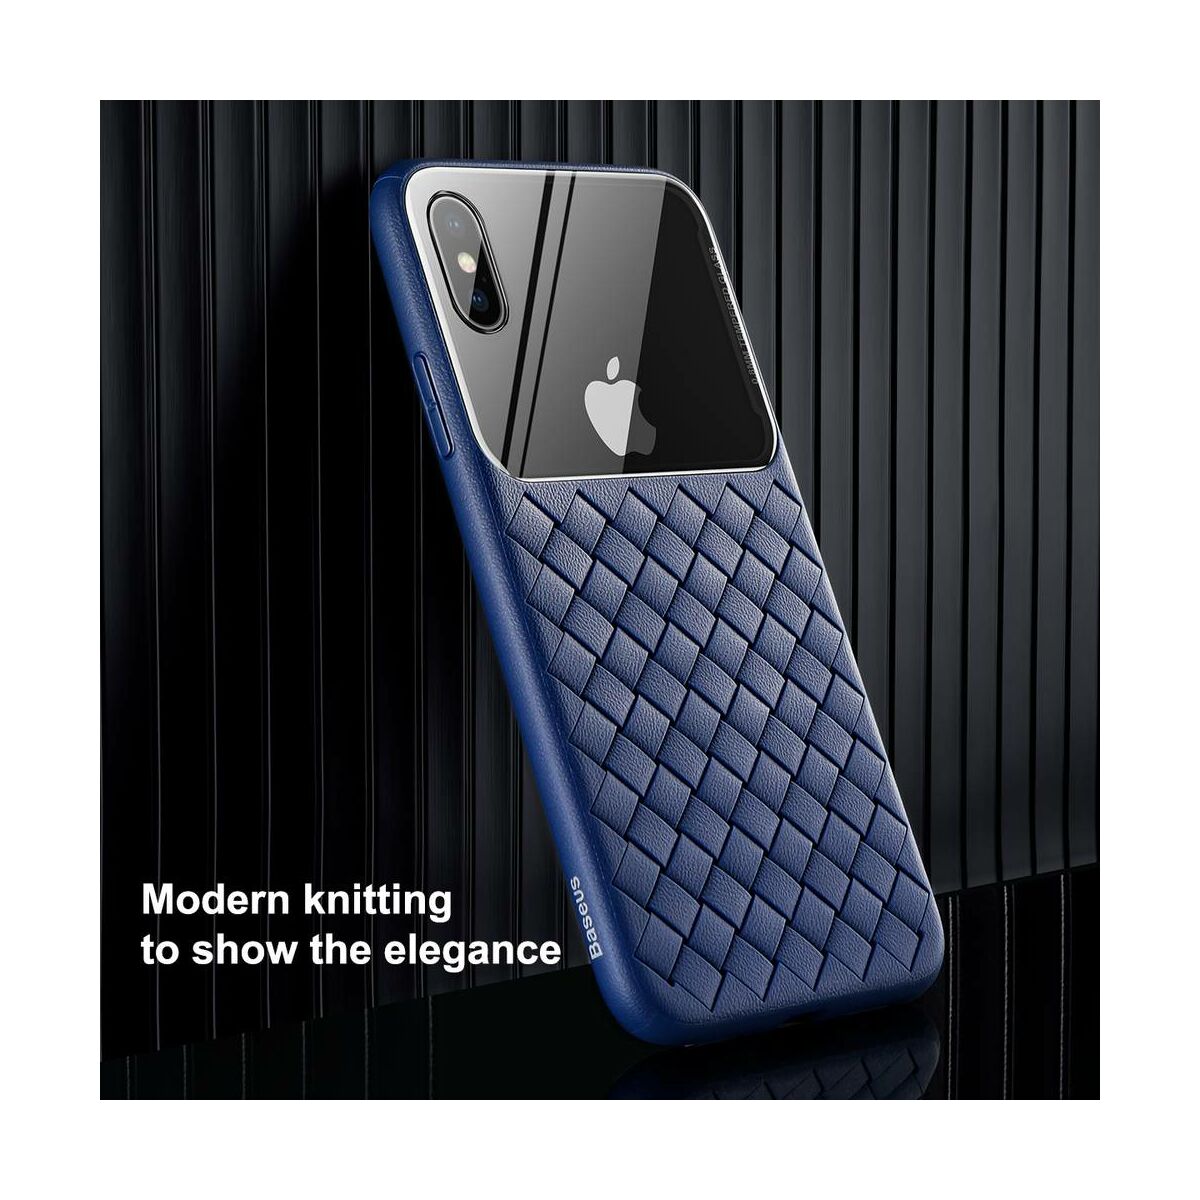 Baseus iPhone XS Max üveg & tok, BV Weaving, kék (WIAPIPH65-BL03)